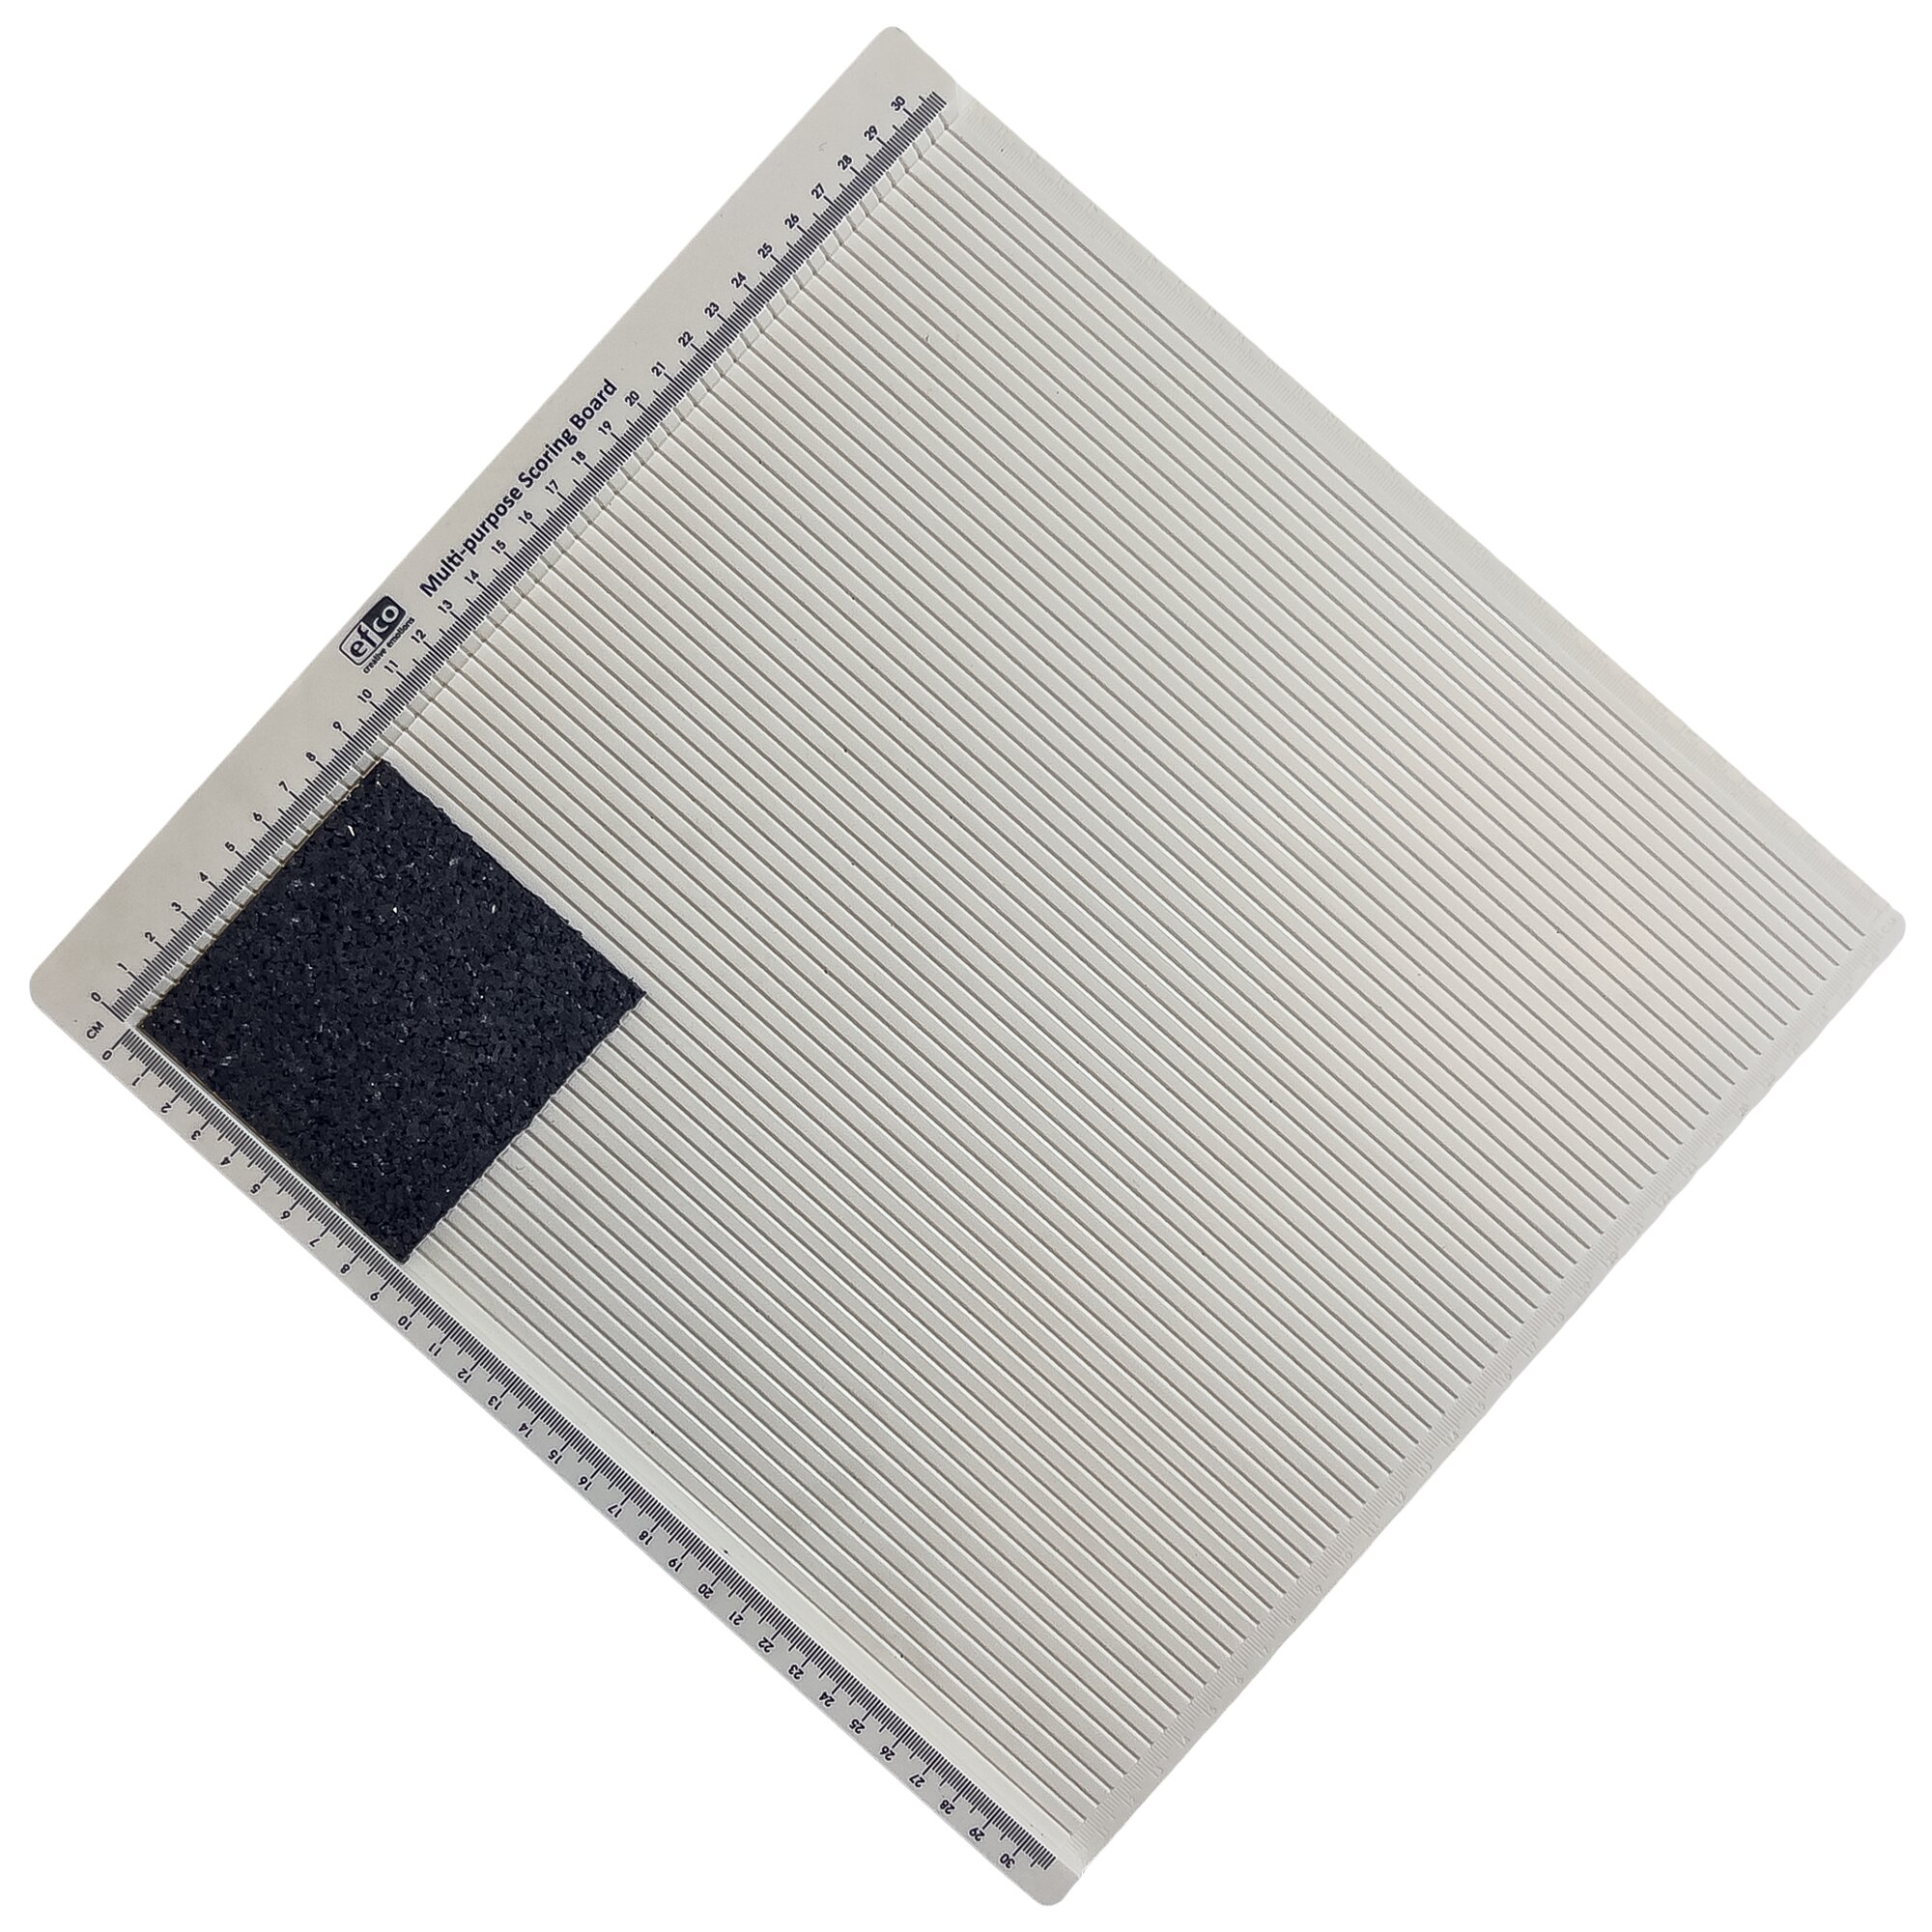 Gumová univerzálna podložka FLOMA UniPad - dĺžka 9 cm, šírka 9 cm, výška 0,3 cm